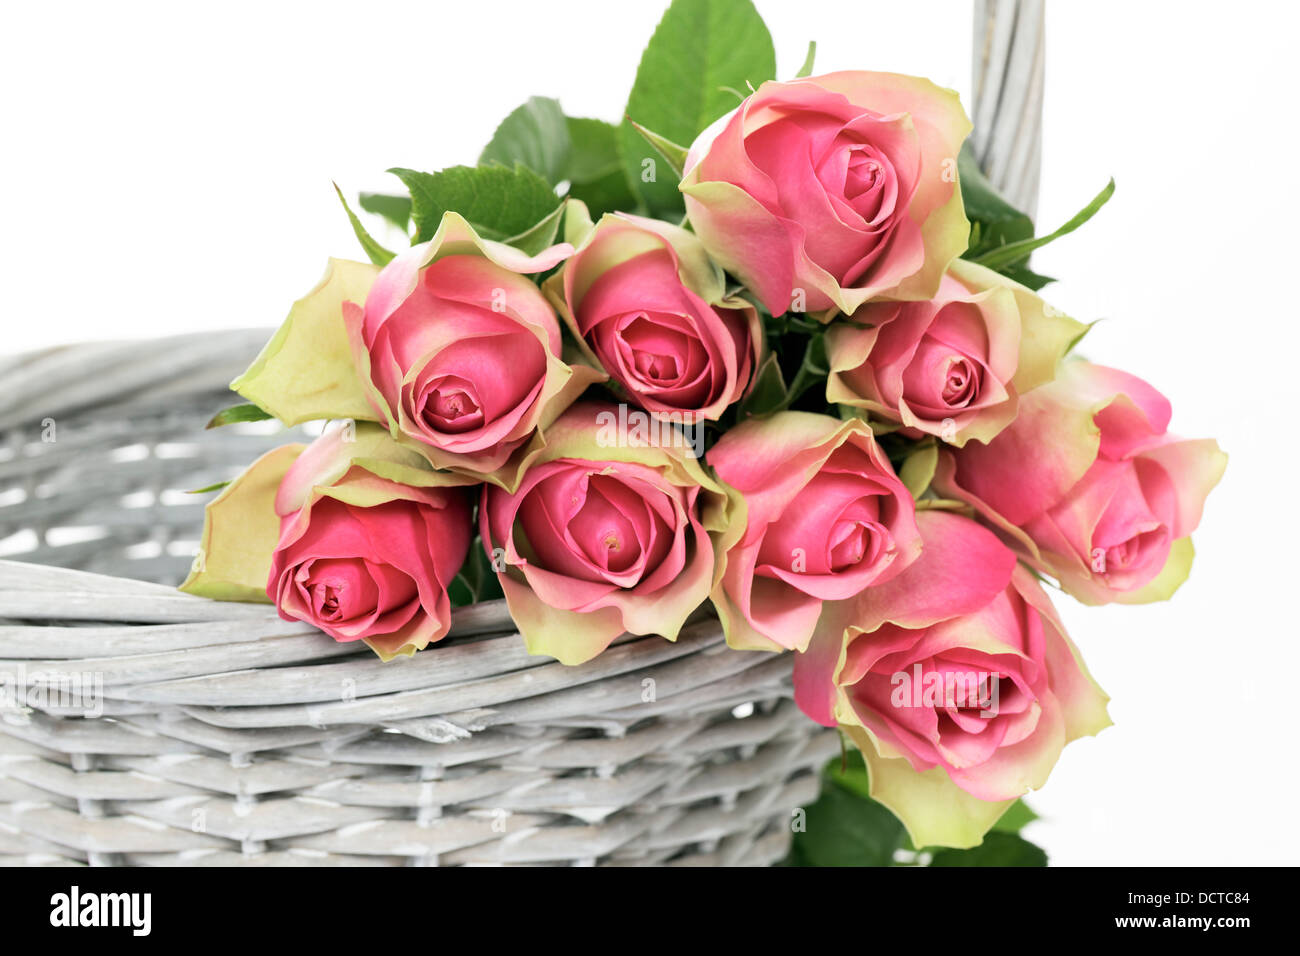 En una cesta de rosas Foto de stock